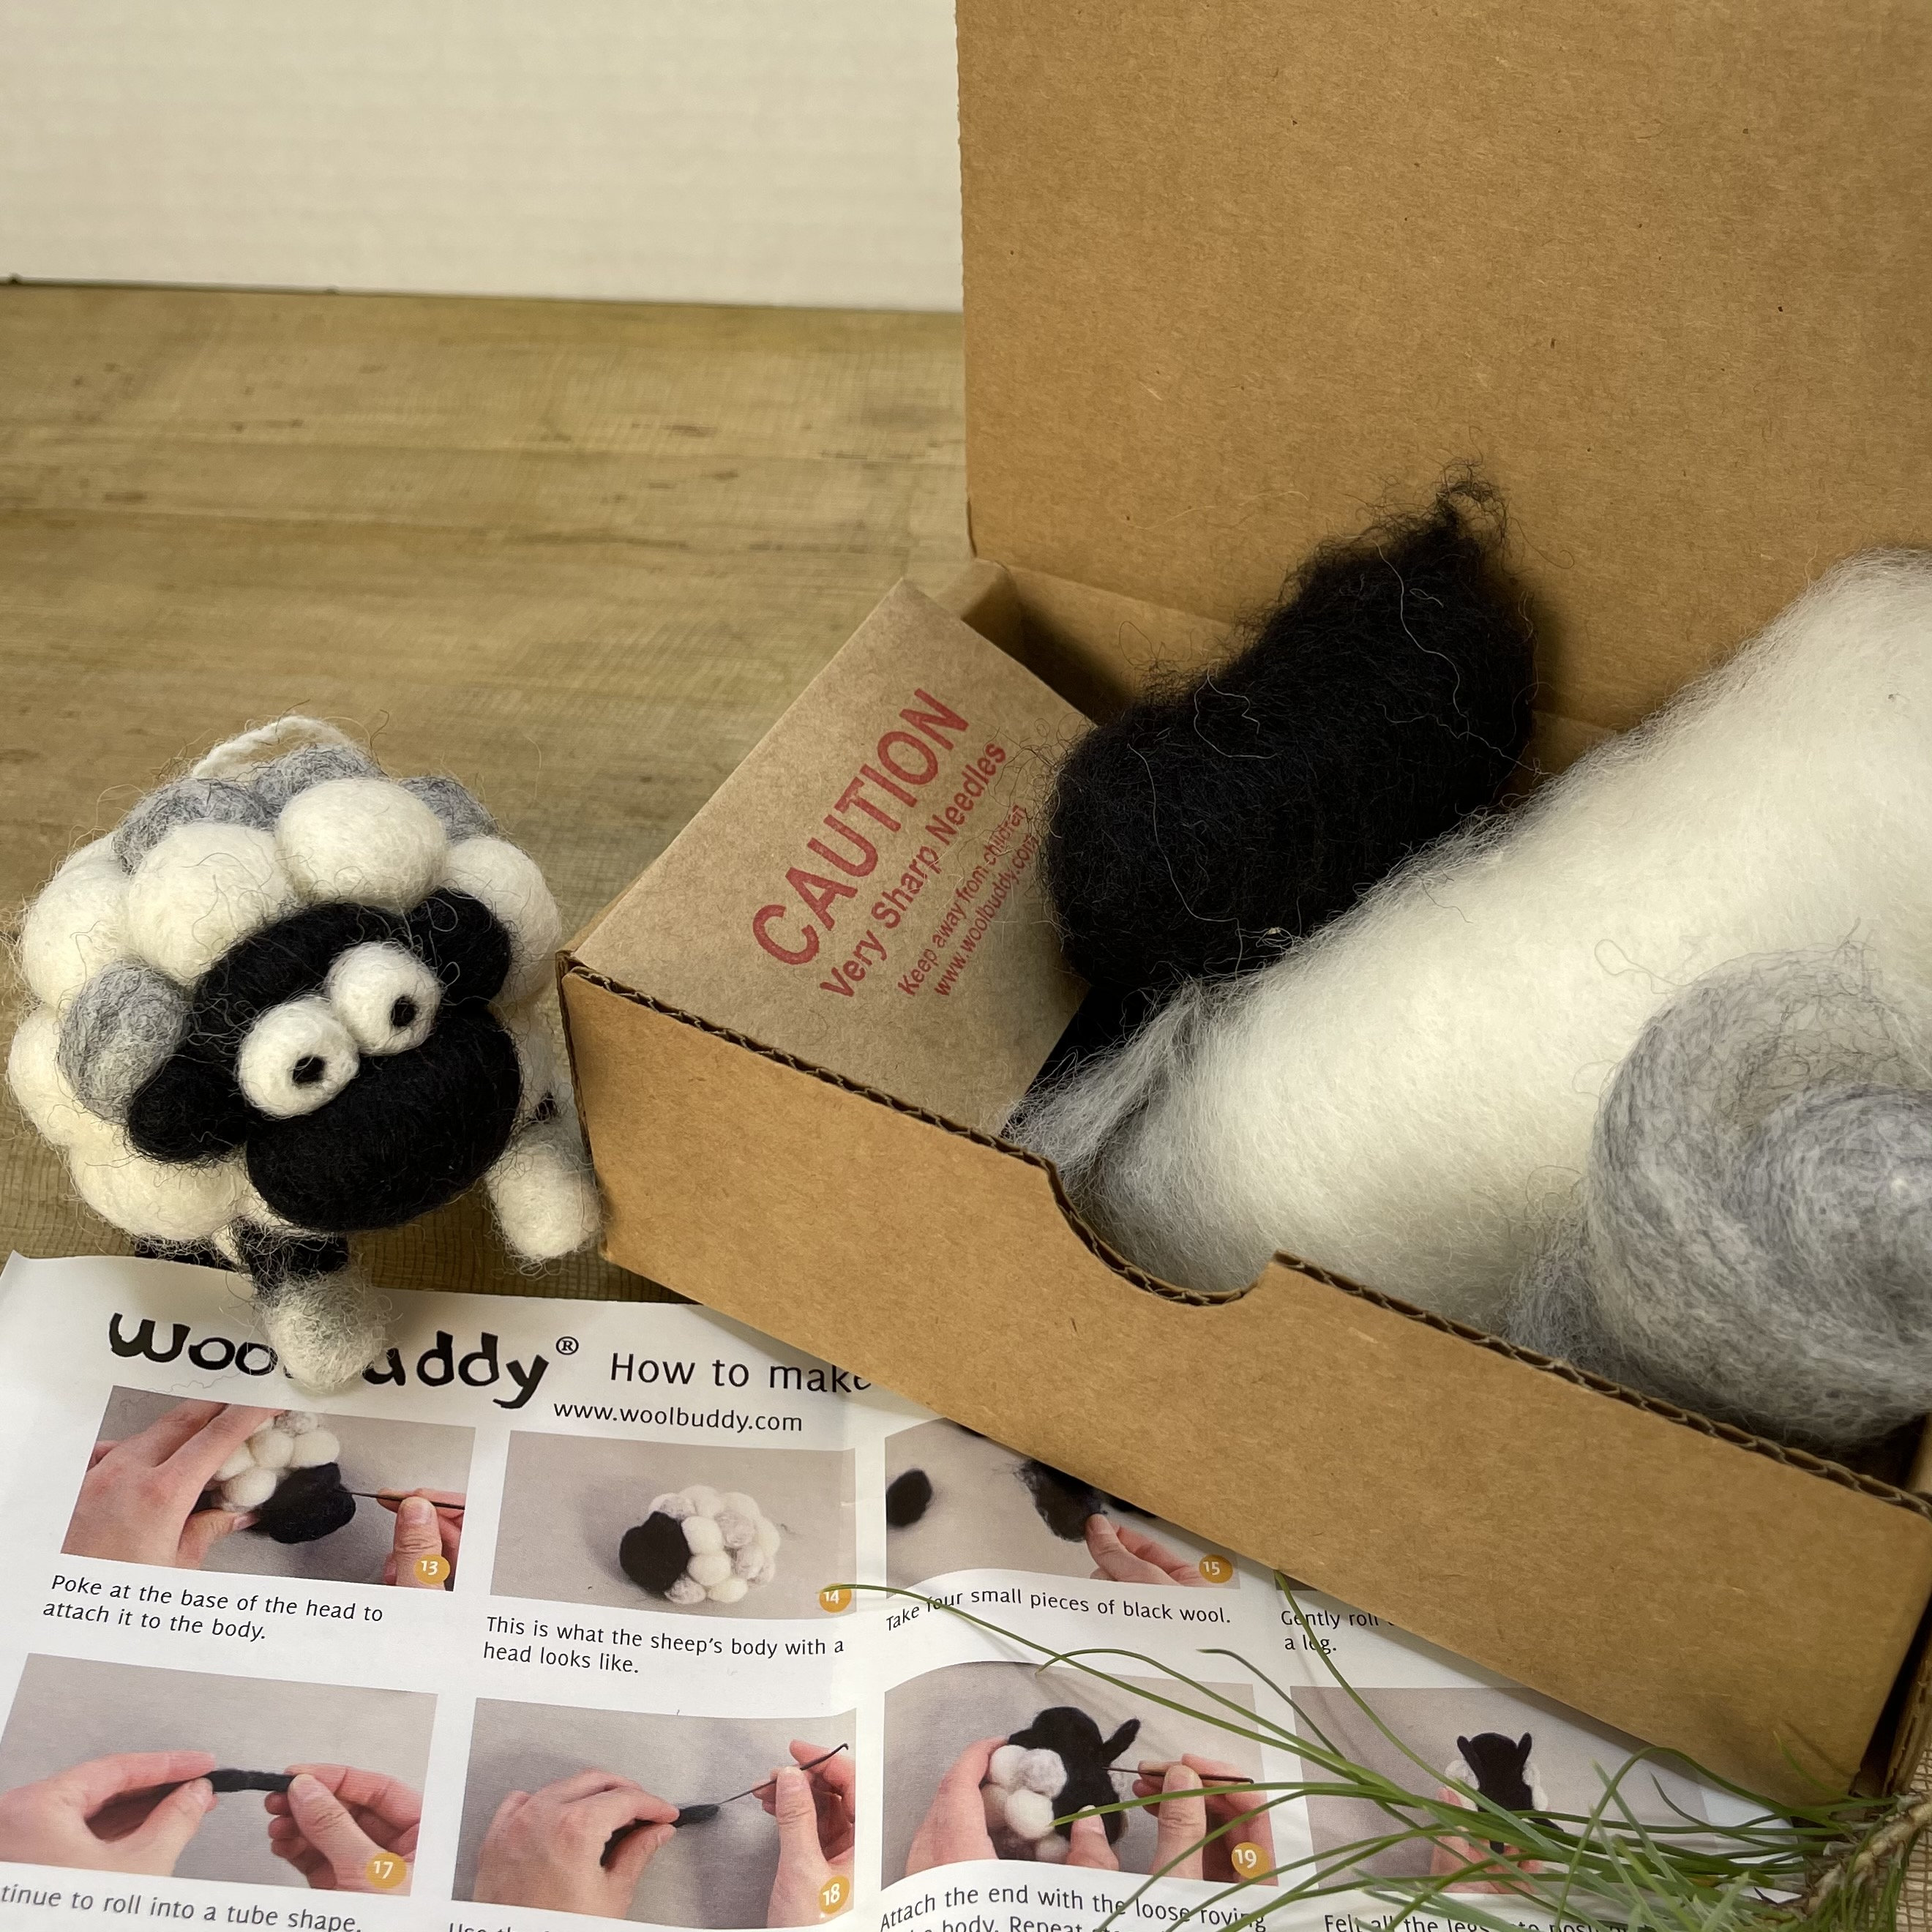  Woolbuddy Sea Animal Needle Felting Kit, Felt Animal Kit, Felting  Kits for Beginners Adult, Handmade Needle Felting Wool with 2 Felting  Needles and Instruction (Penguin) : Arts, Crafts & Sewing